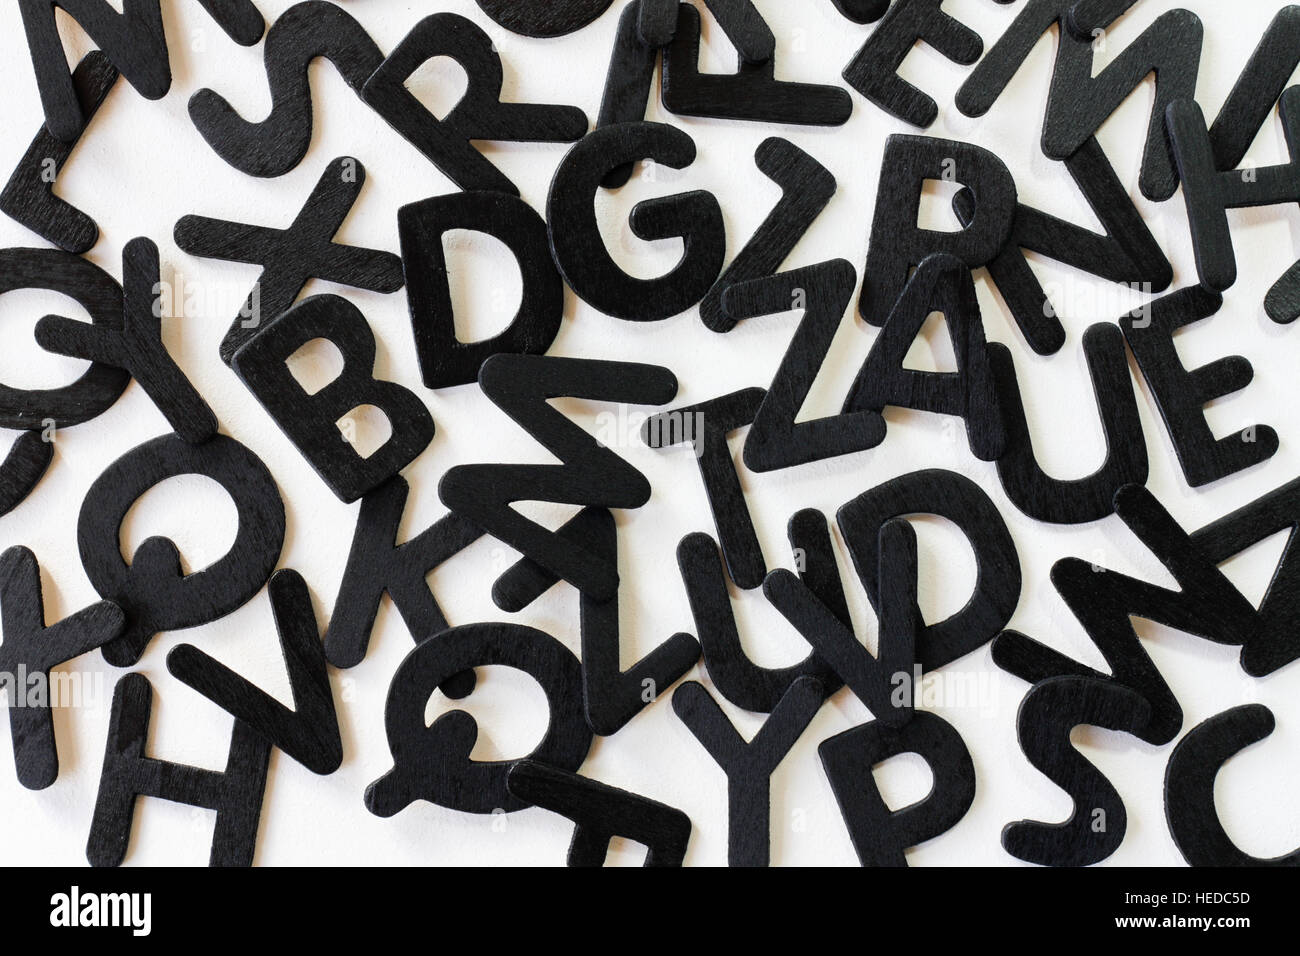 Random Alphabet Buchstaben auf weißem Hintergrund das Konzept der Alphabetisierung, Literatur und Codewörter zu illustrieren. Stockfoto